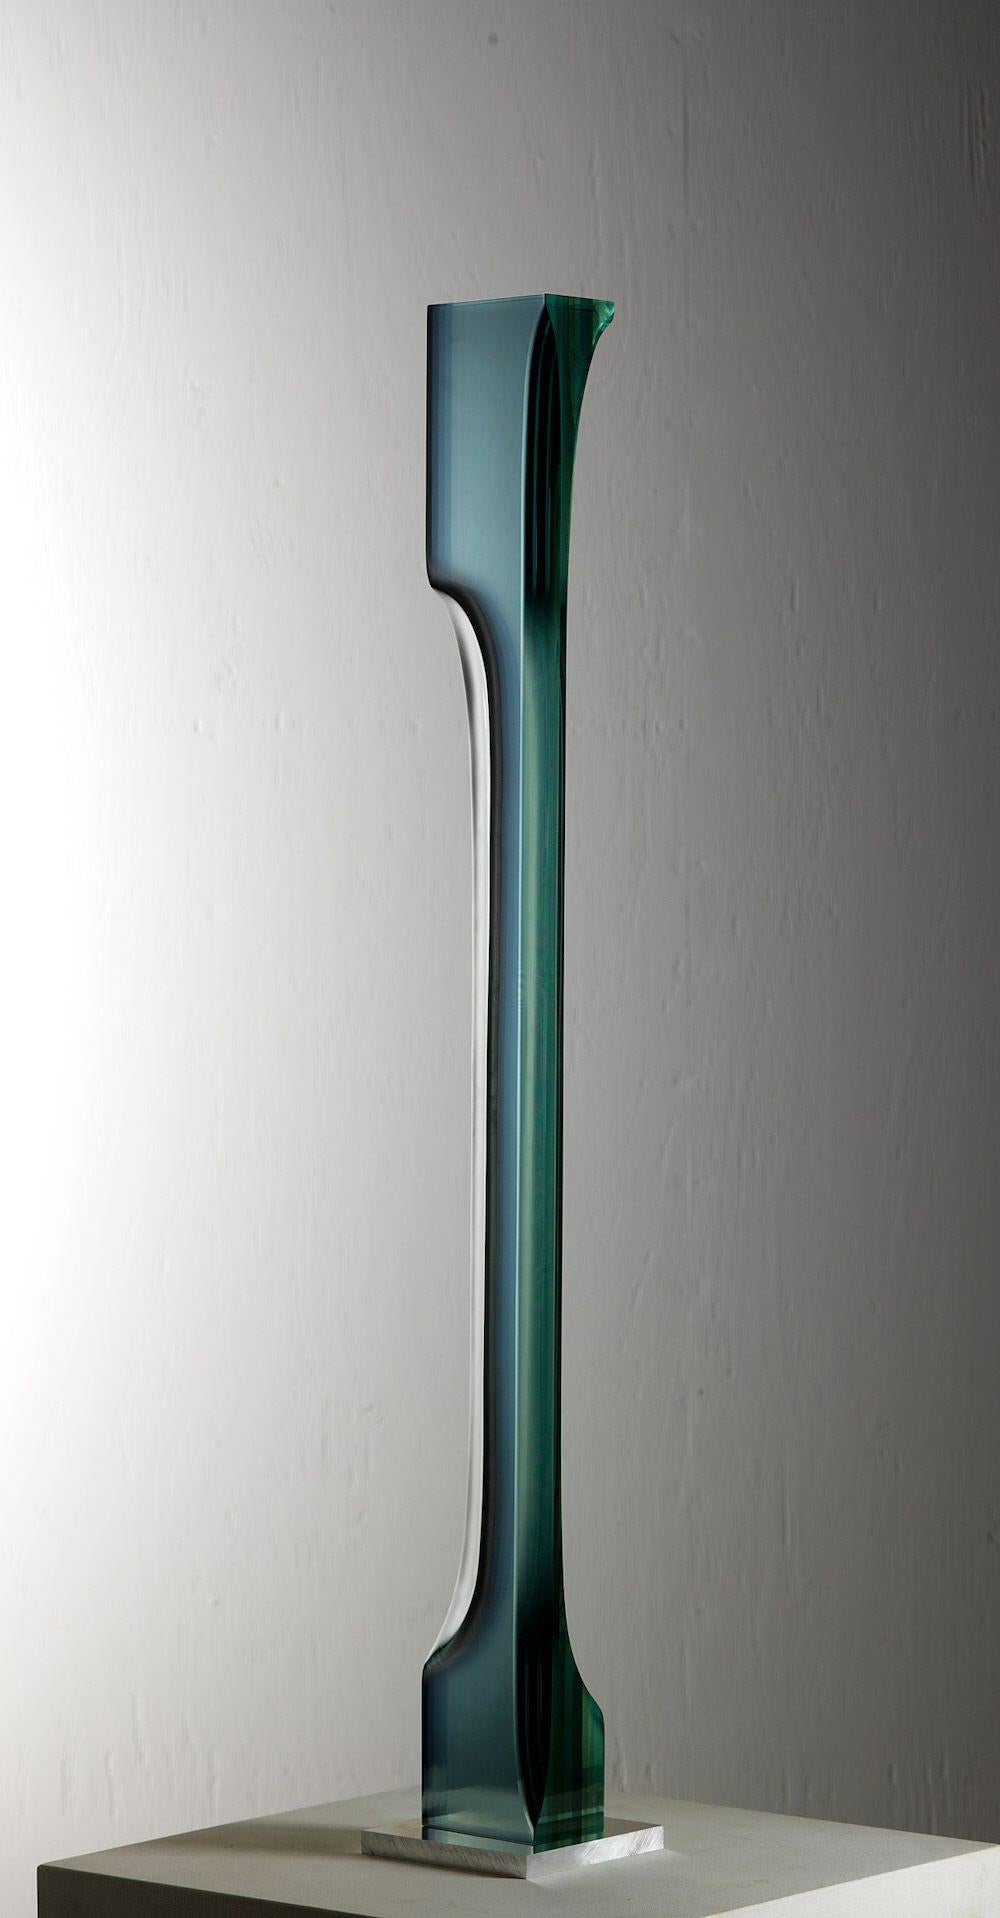 M.140801 ist eine Glasskulptur des japanischen zeitgenössischen Künstlers Toshio Iezumi mit den Maßen 100 × 10,5 × 7 cm (39,4 × 4,1 × 2,8 in). 
Die Skulptur ist signiert und nummeriert, gehört zu einer limitierten Auflage von 5 Exemplaren und wird